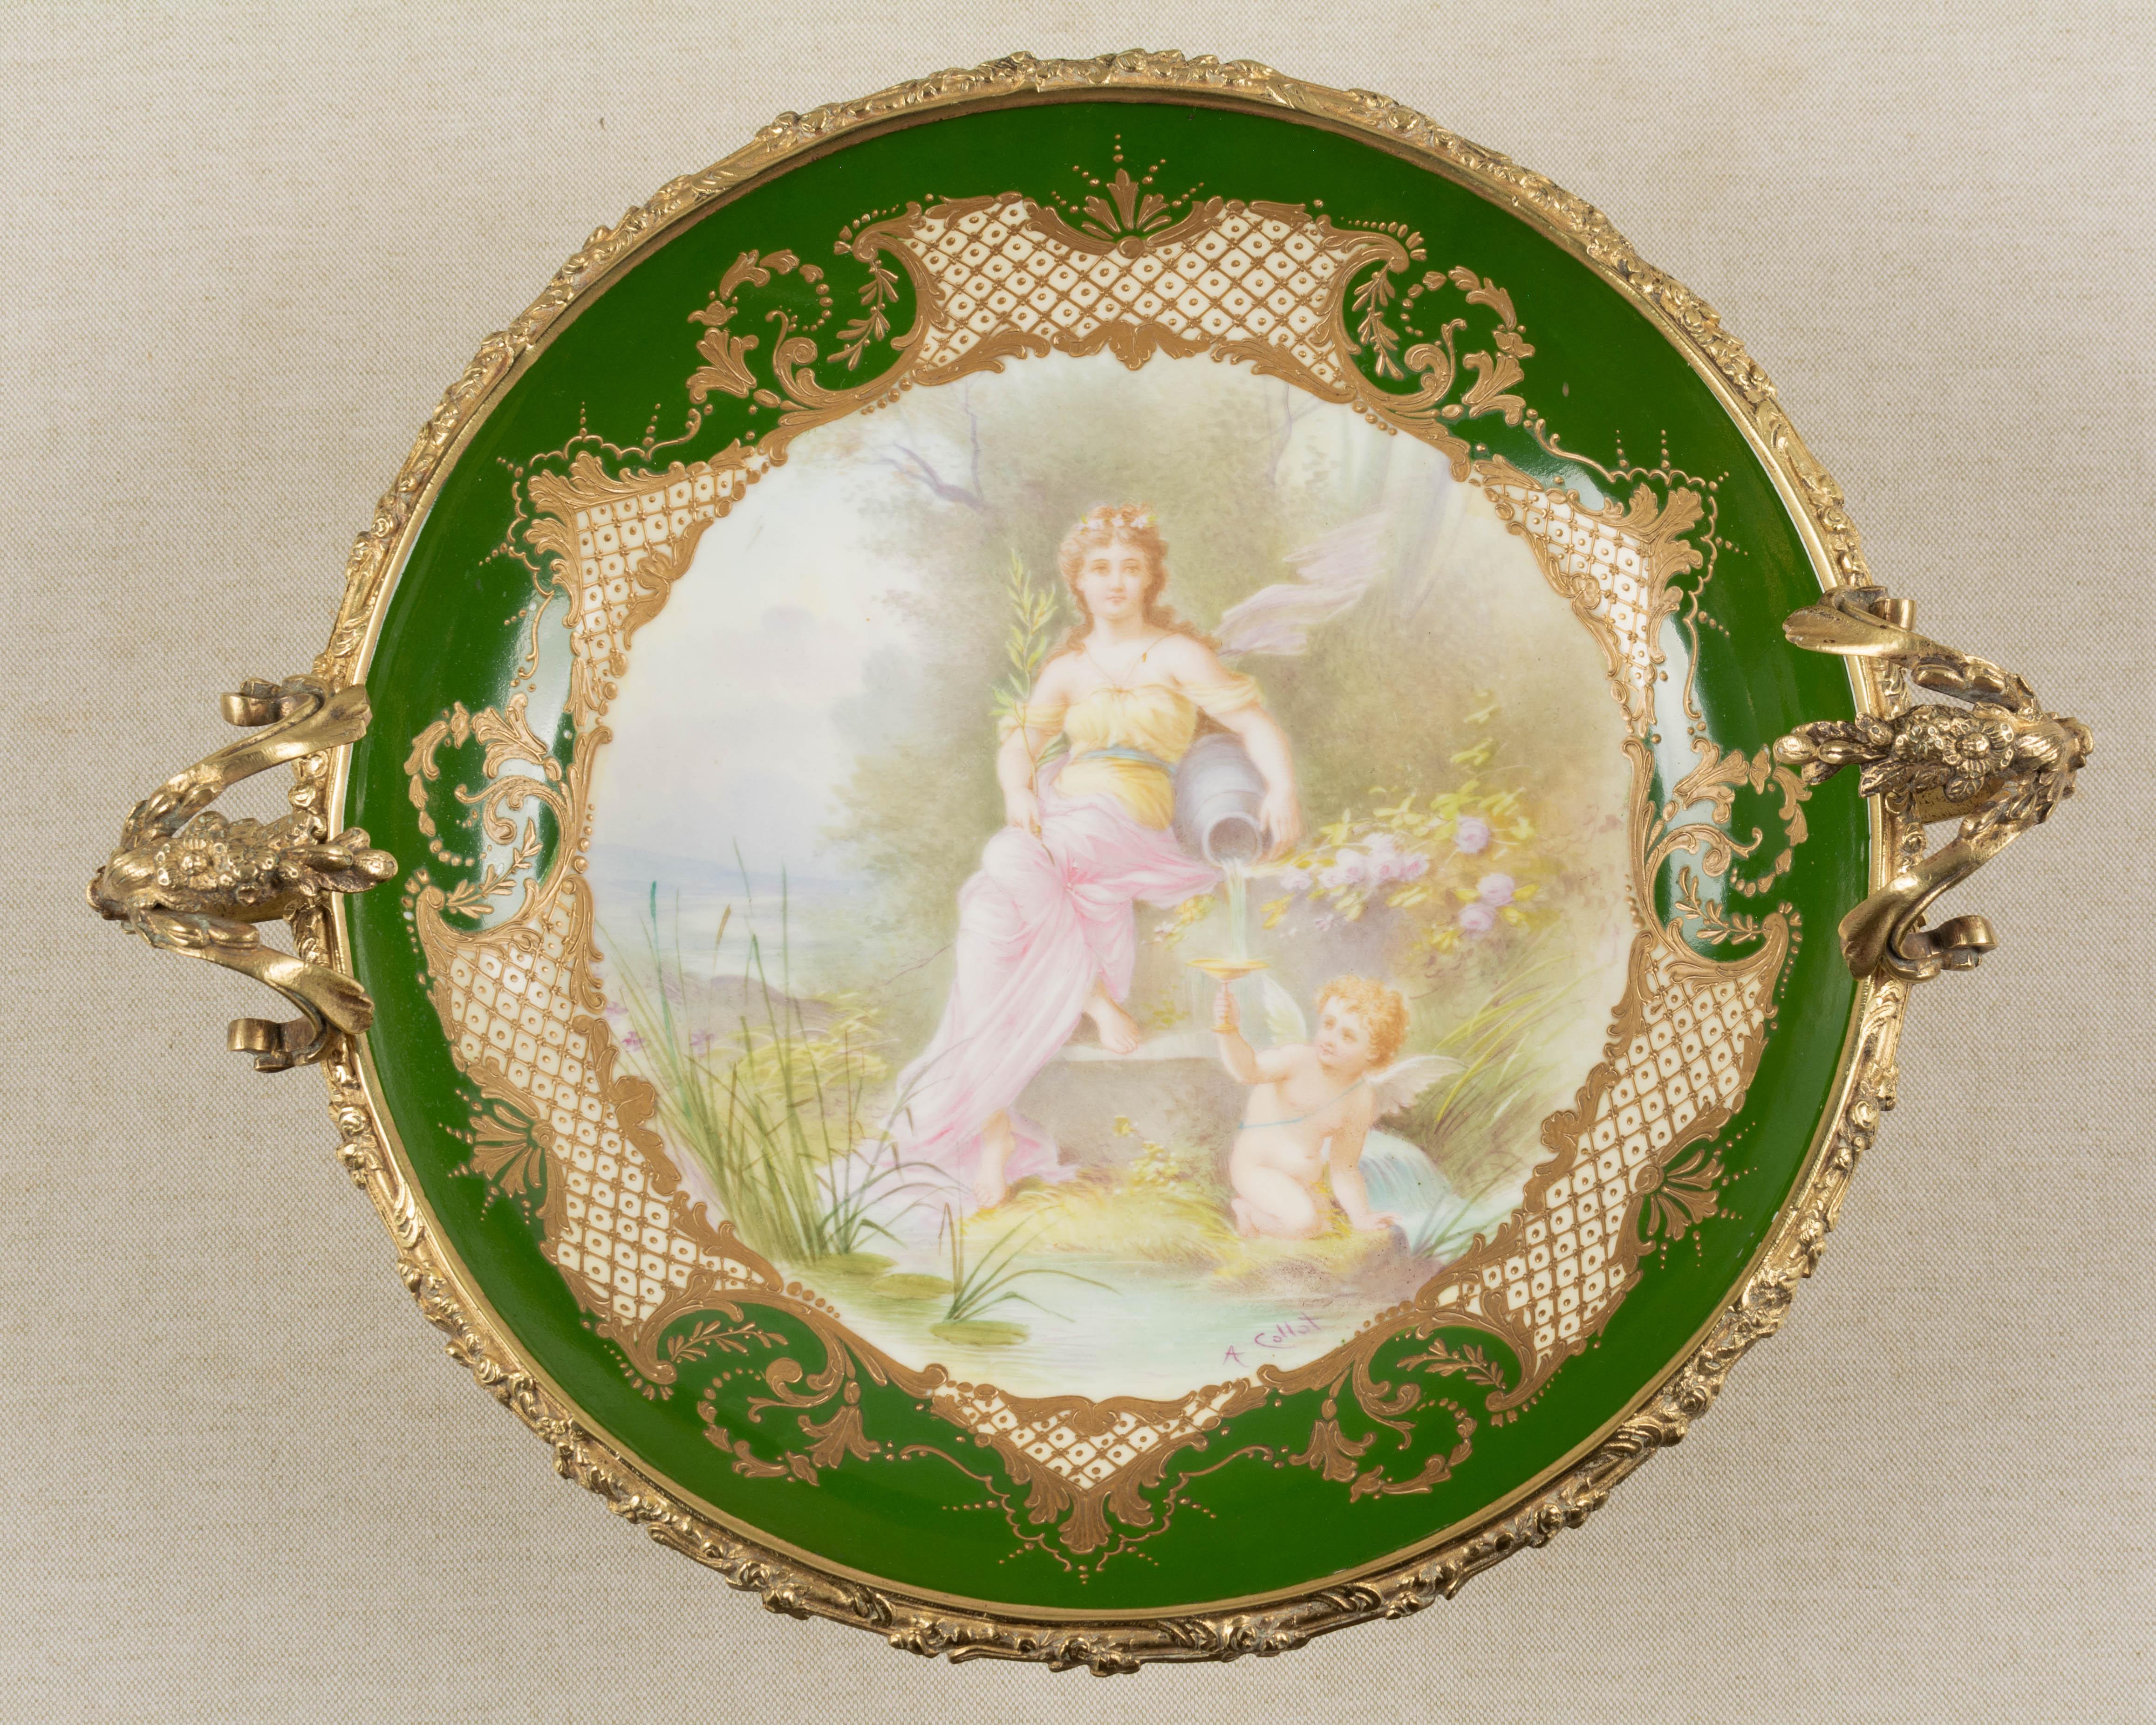 19th Century French Ormolu Sèvres Porcelain Centerpiece Bowl For Sale 5